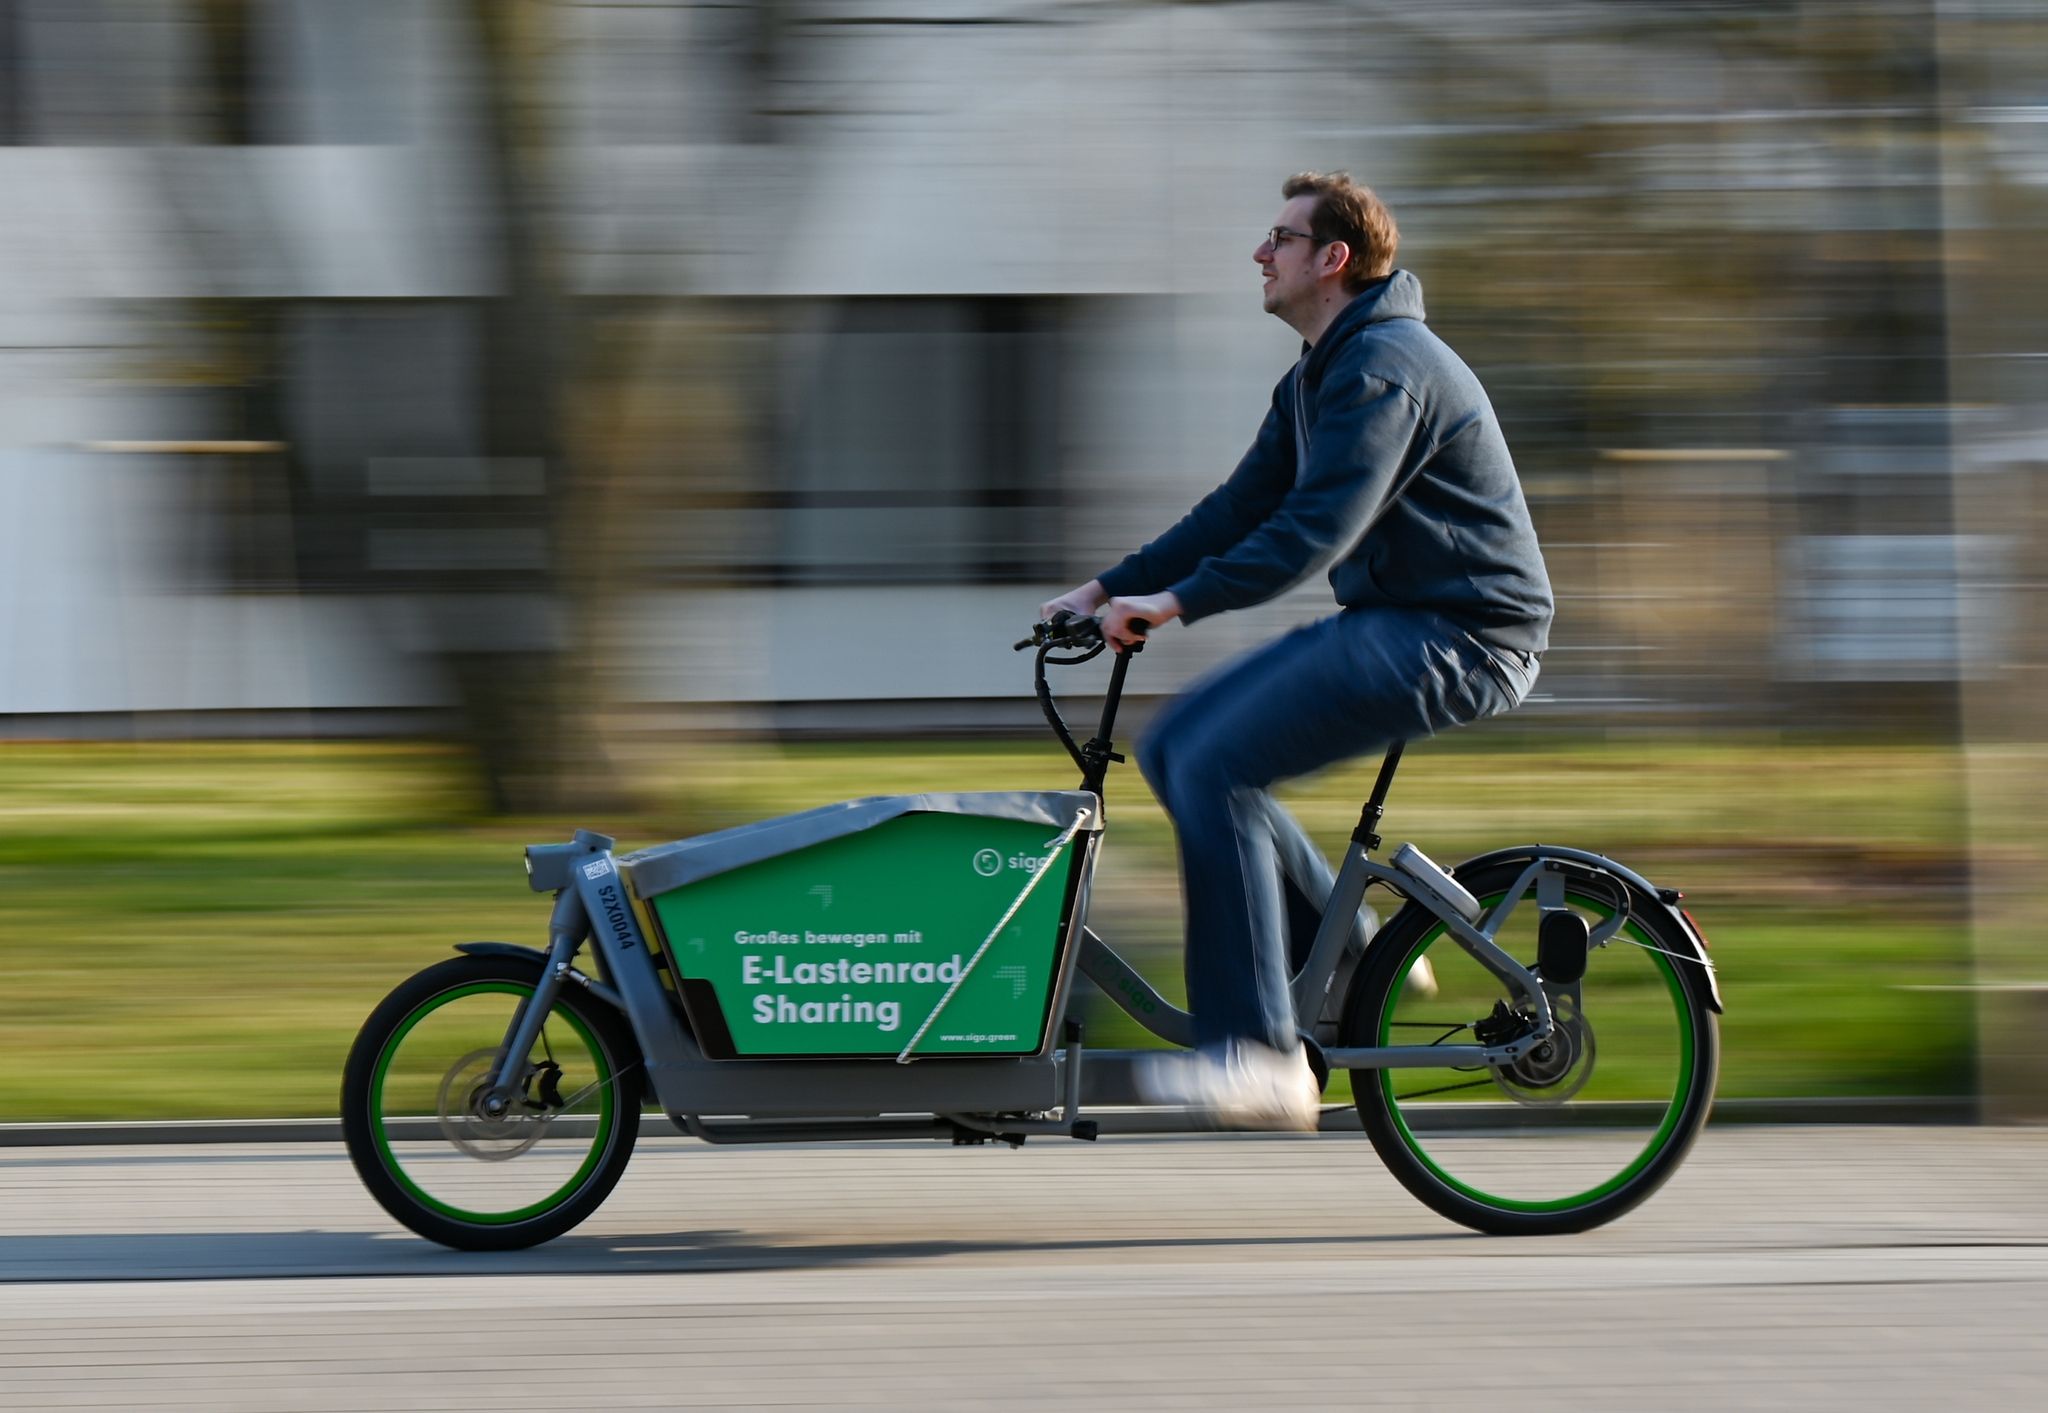 Tobias Lochen, Gründer des Darmstädter Lastenrad-Start-ups Sigo, fährt auf einem E-Lastenrad.